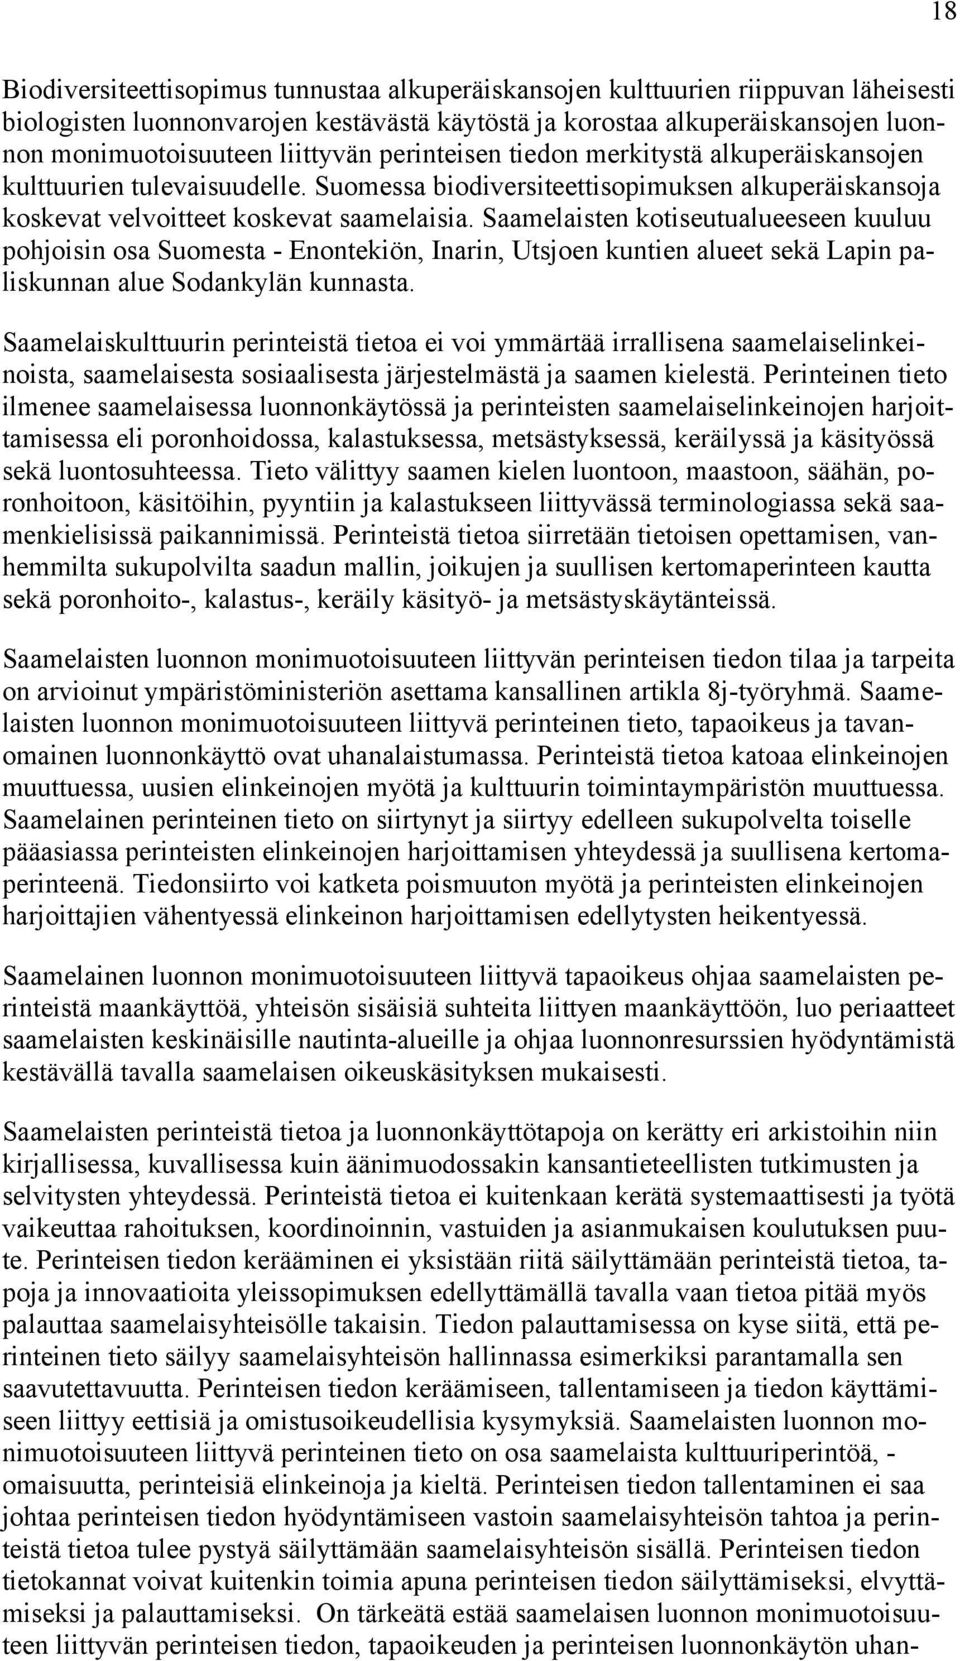 Saamelaisten kotiseutualueeseen kuuluu pohjoisin osa Suomesta - Enontekiön, Inarin, Utsjoen kuntien alueet sekä Lapin paliskunnan alue Sodankylän kunnasta.